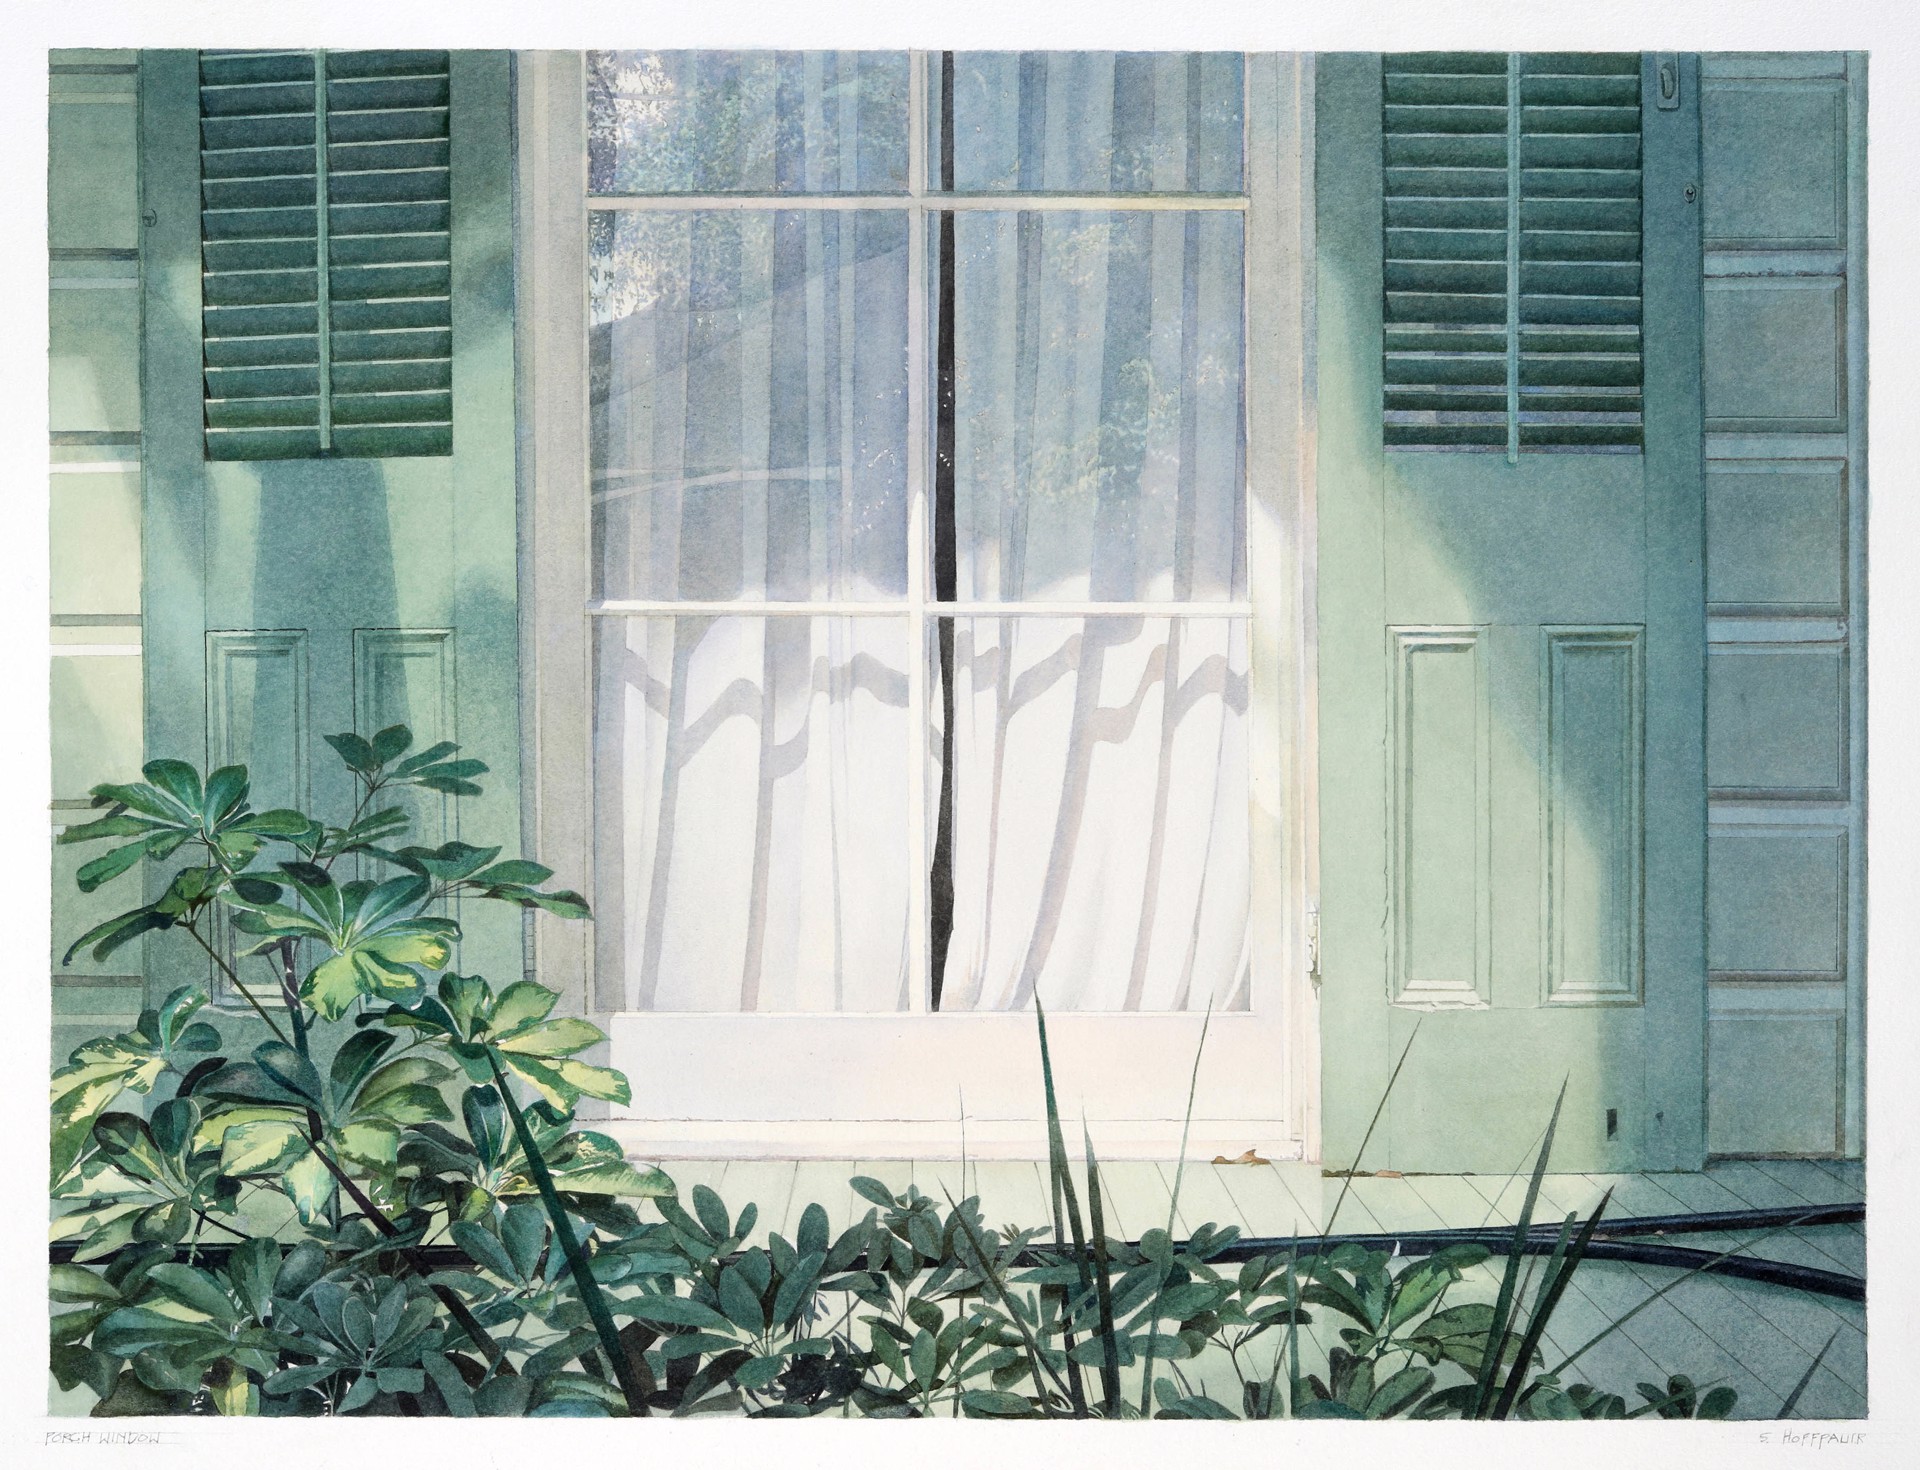 Porch Window by Stephan Hoffpauir